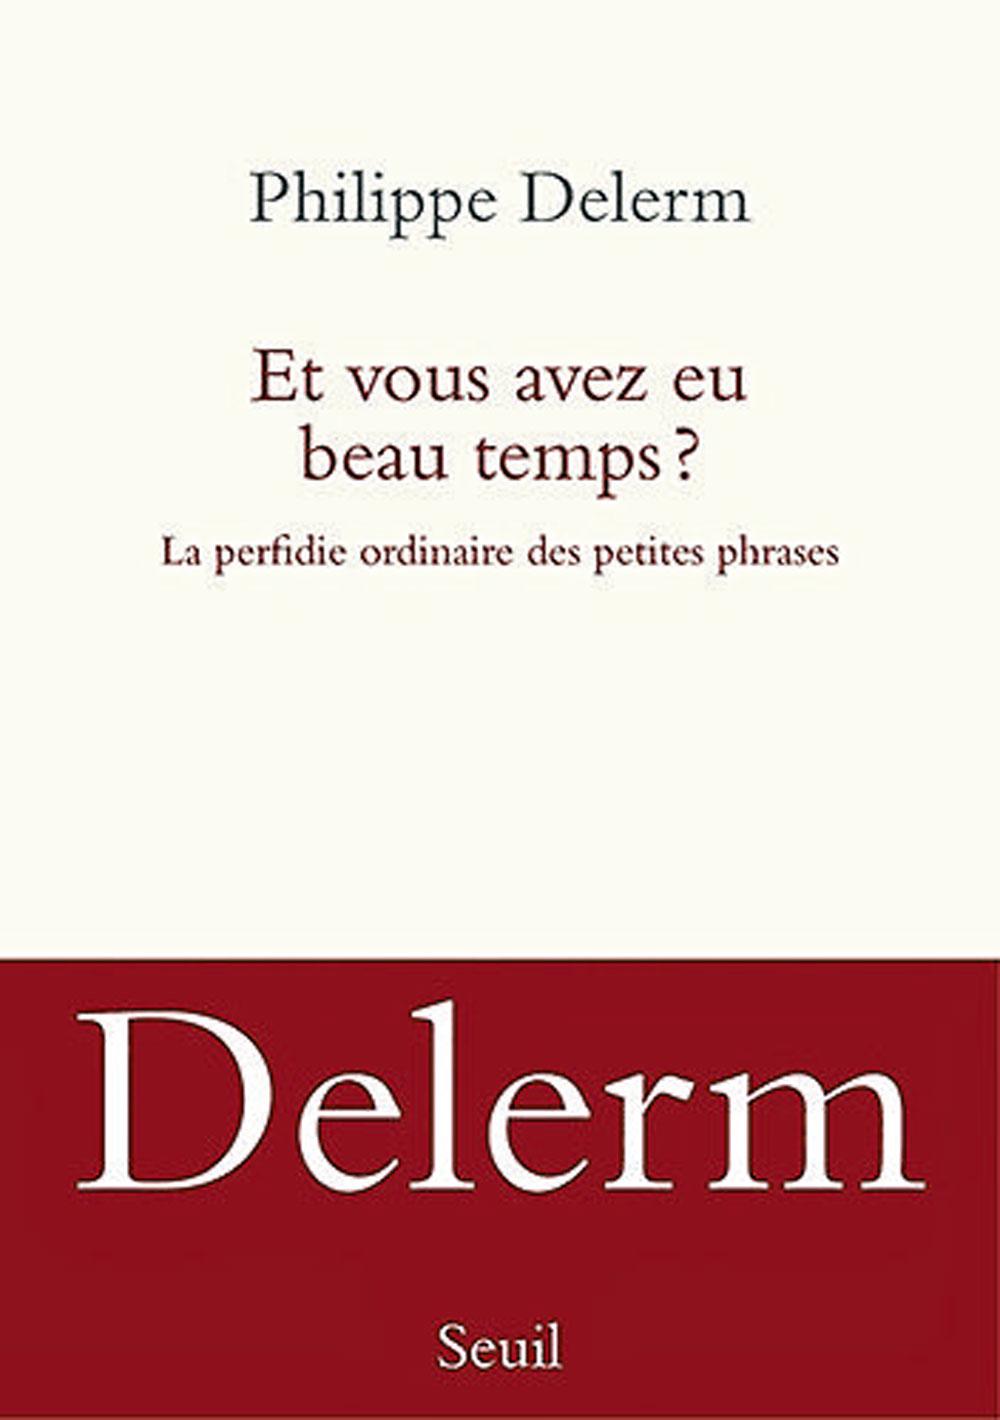 Et vous avez eu beau temps ? La perfidie ordinaire des petites phrases, par Philippe Delerm, éd. Seuil, 159 p.